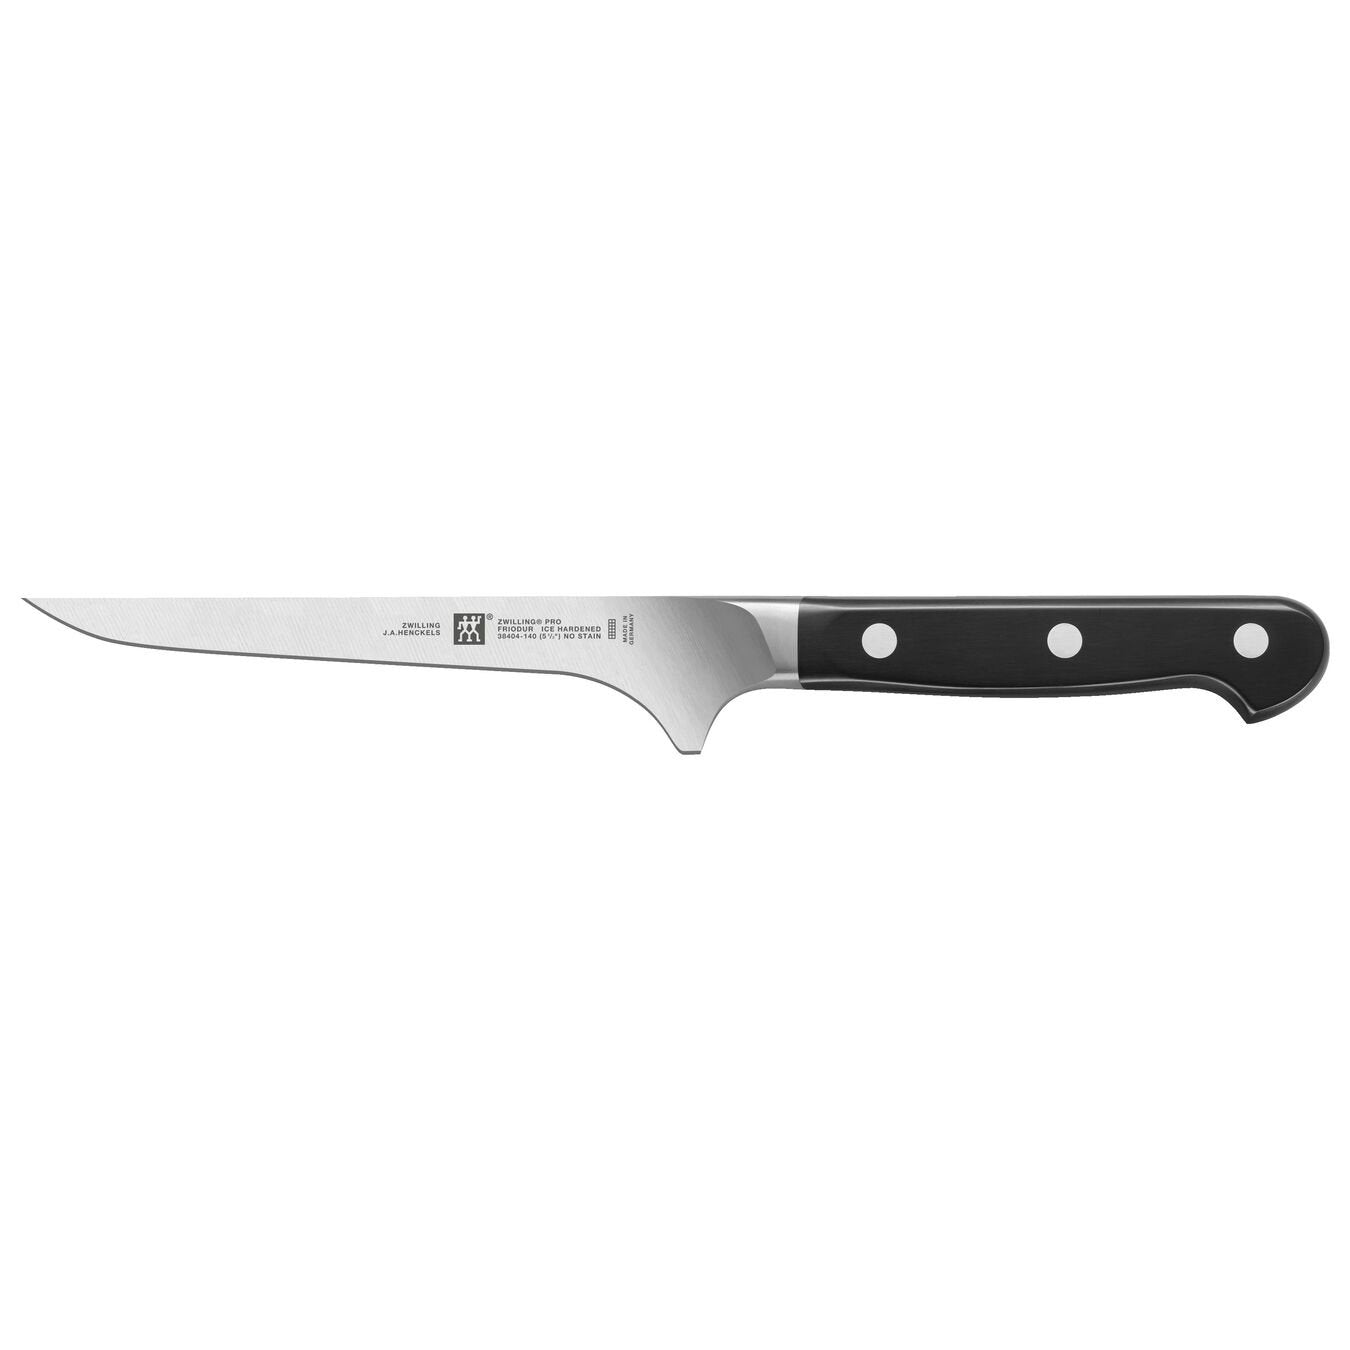 boning knife with black riveted handle on white backgrund